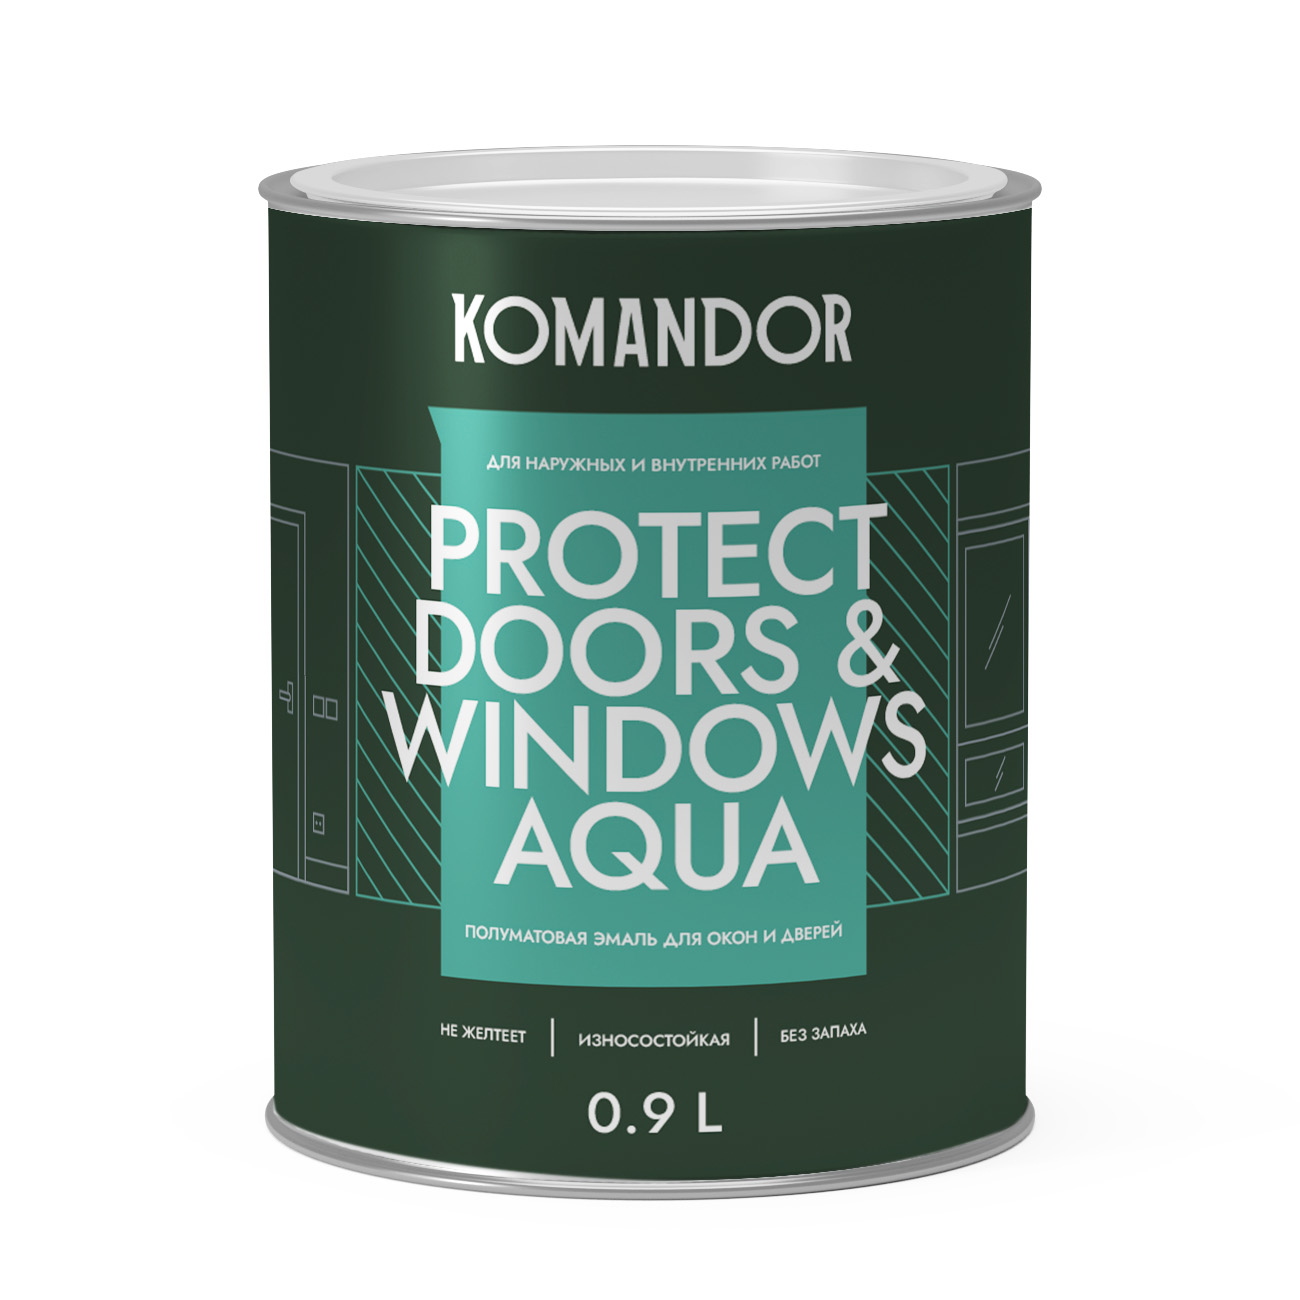 Эмаль для окон и дверей Komandor Protect Doors & Windows Aqua C S1313003001 полуматовая 0,9 л